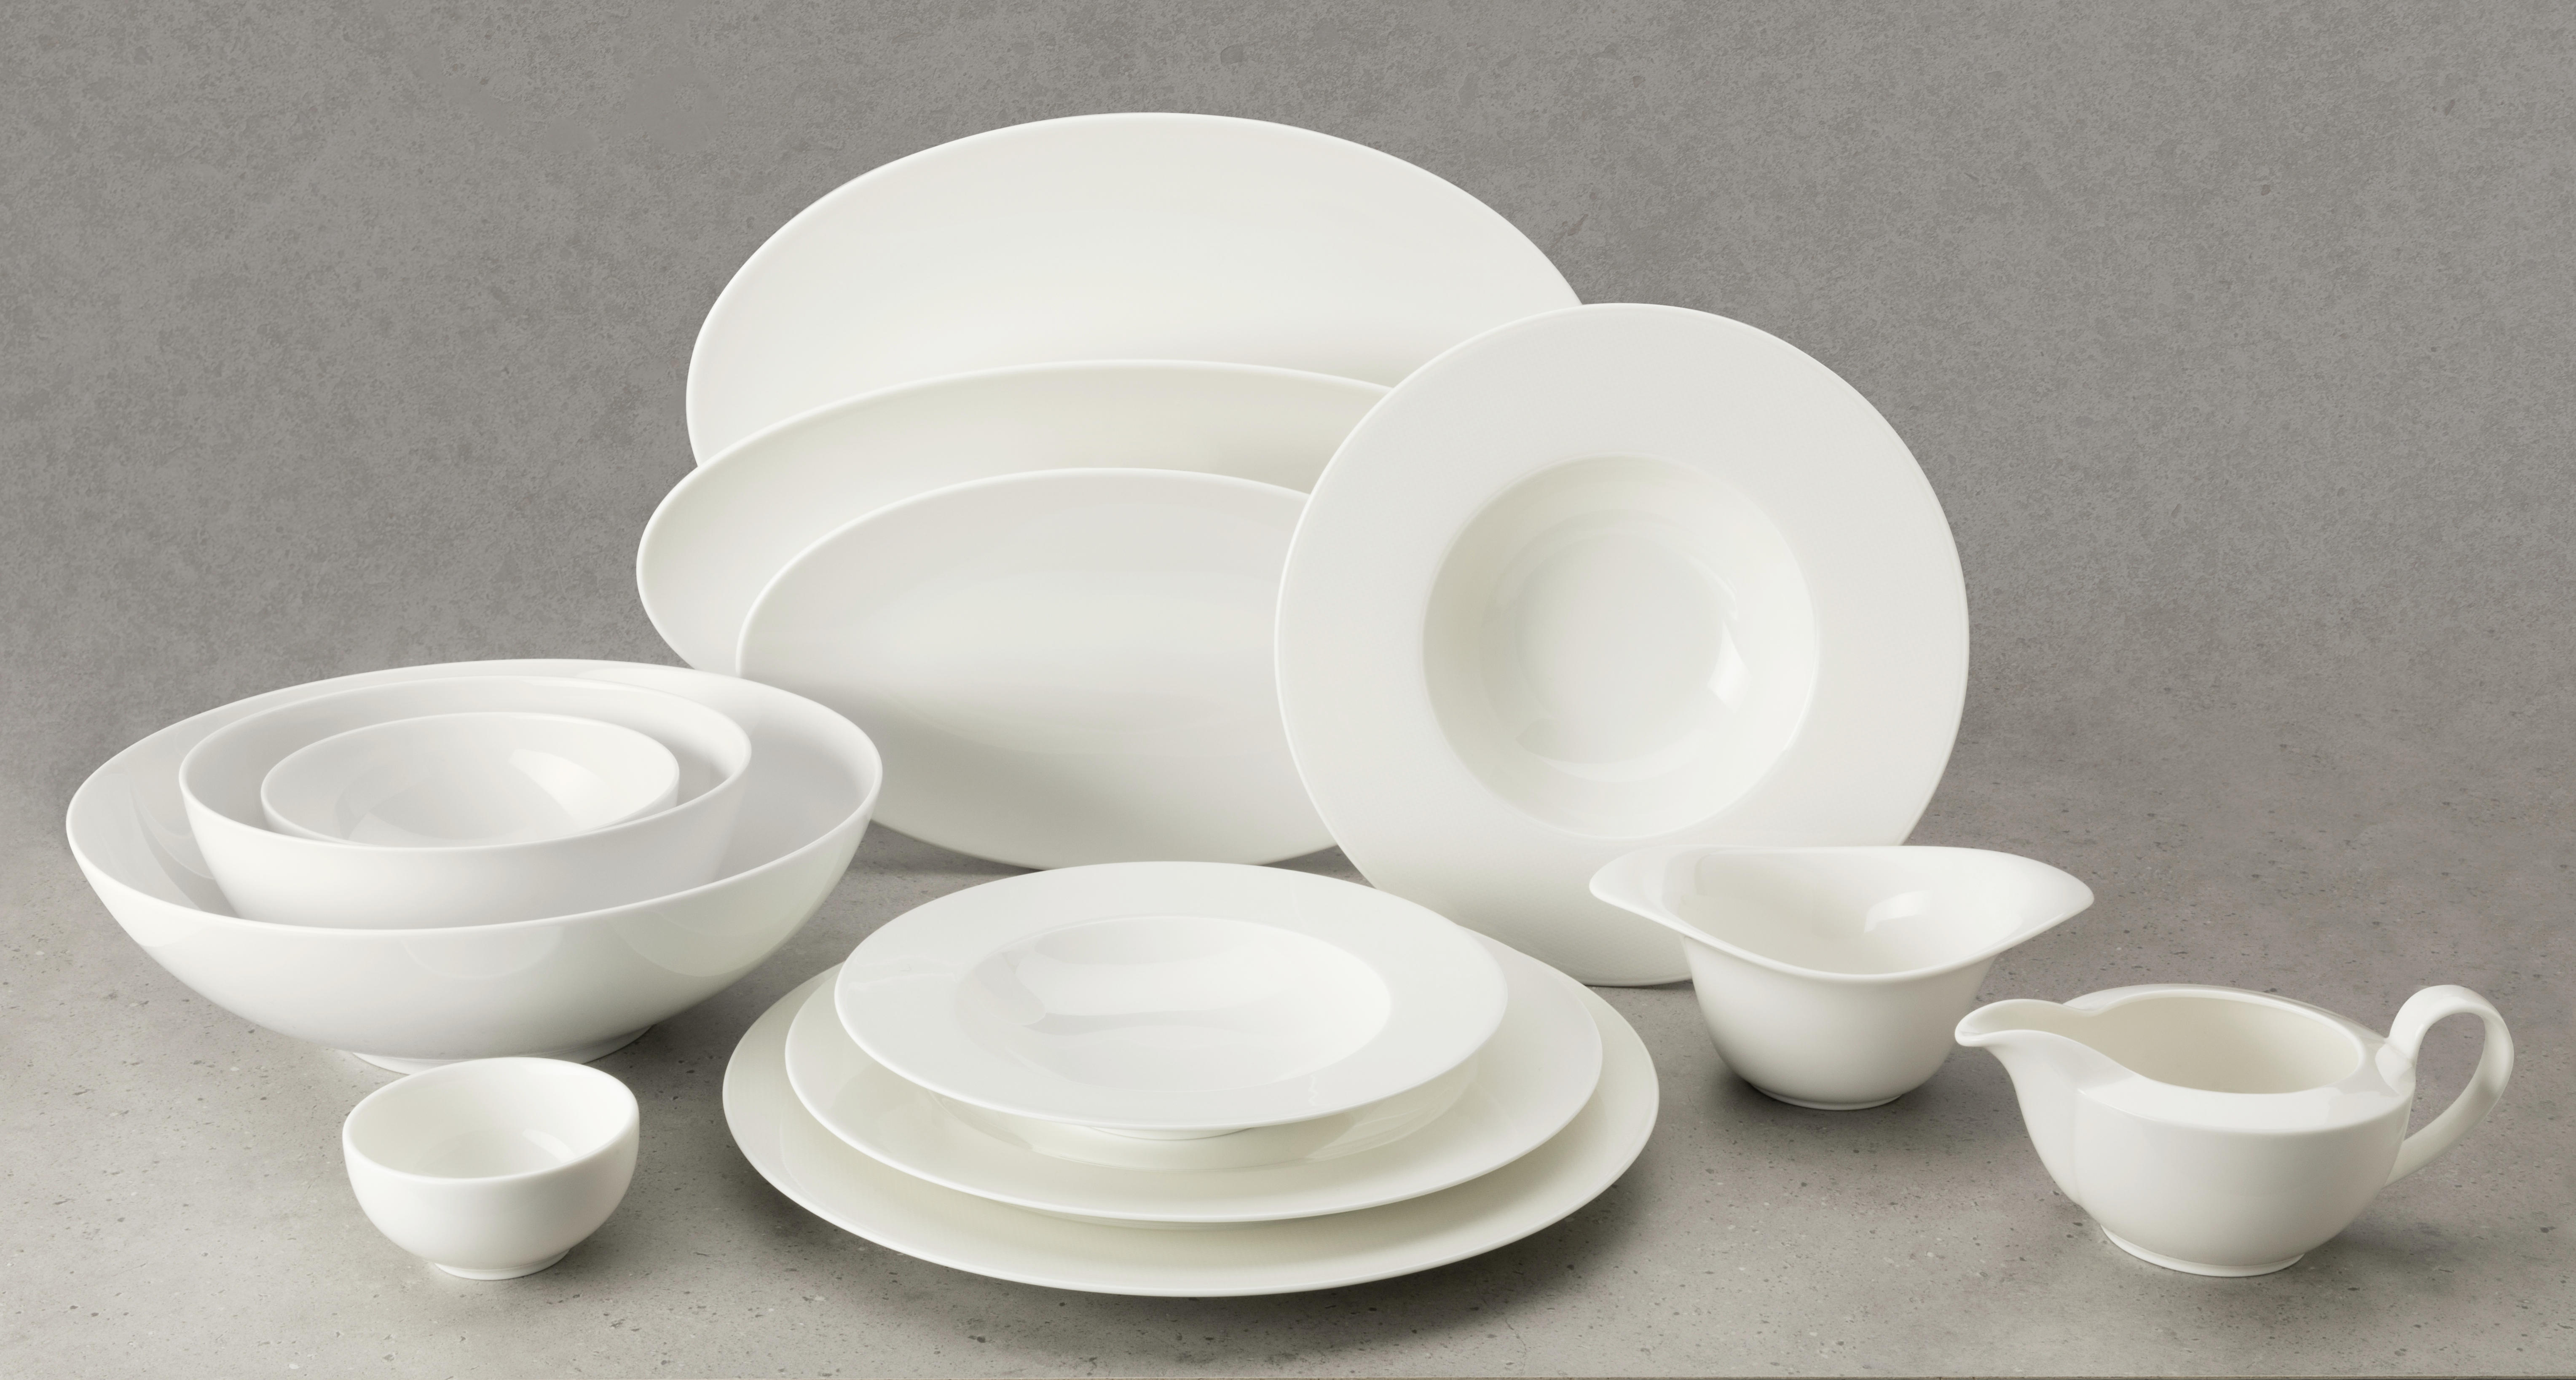 OMÁČNIK, porcelán - biela, Design, keramika (0,45l) - Seltmann Weiden